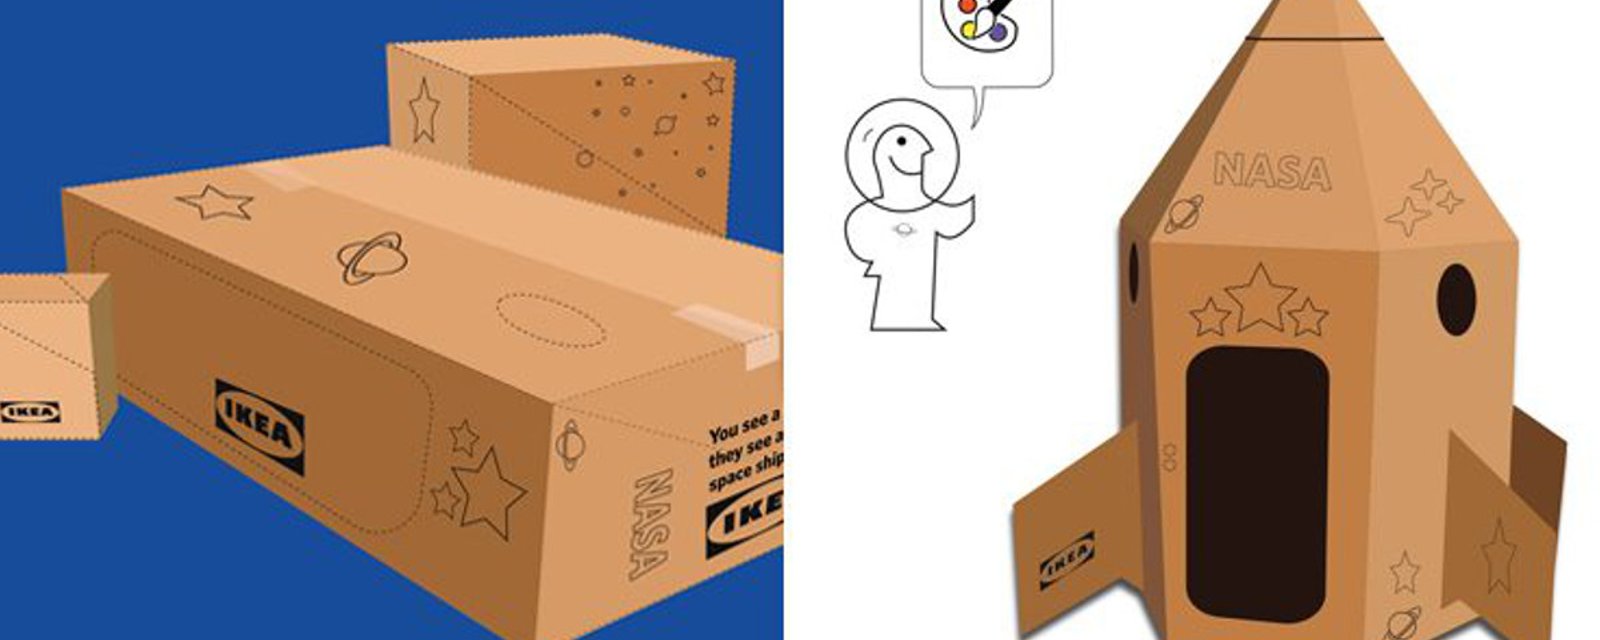 Ikea créé un mode d'emploi pour transformer ses boites de carton en fusée spatiale! 